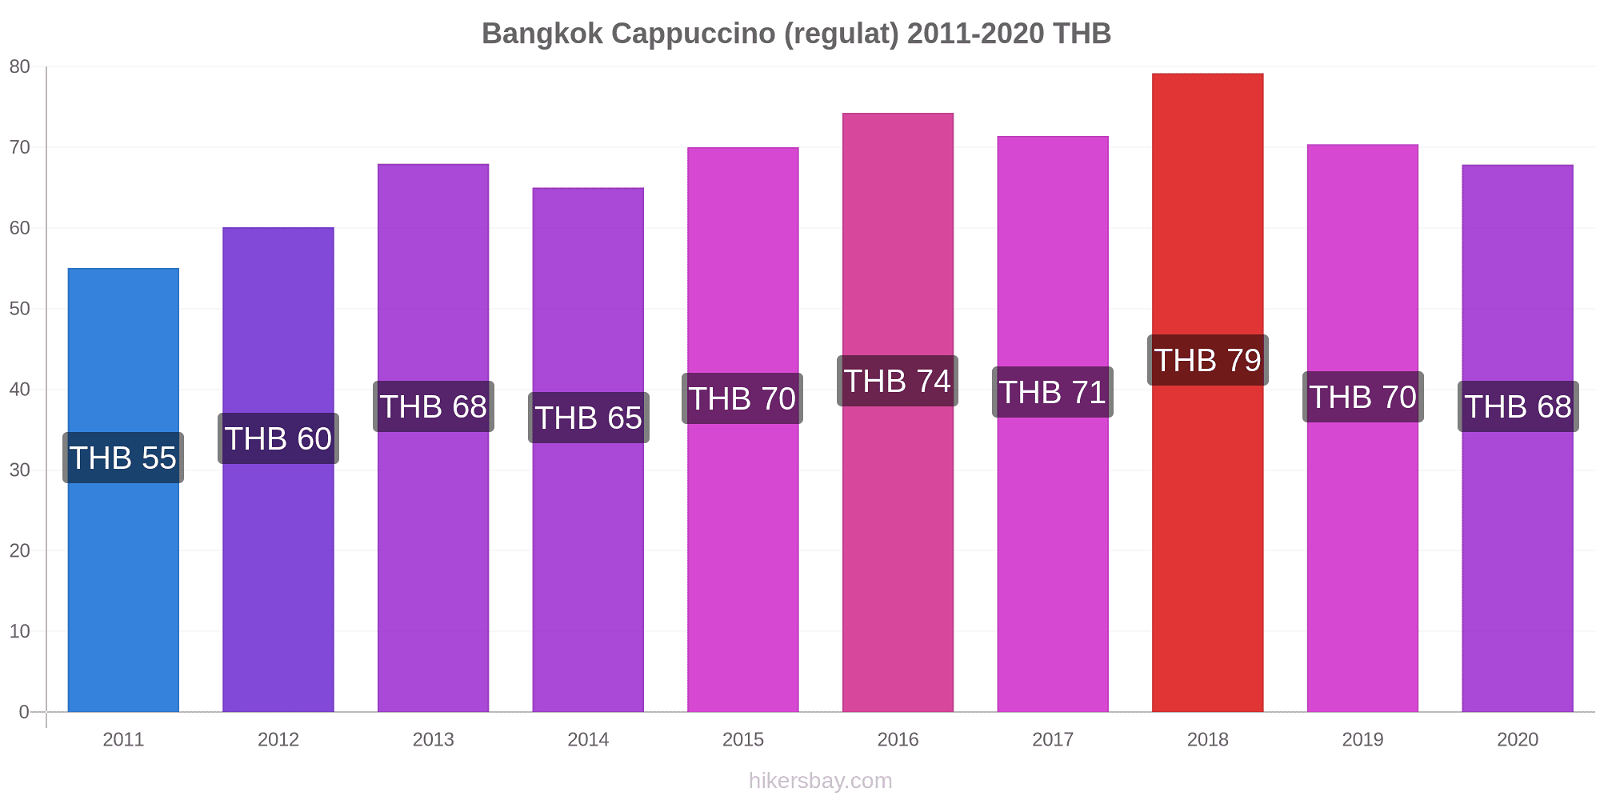 Bangkok modificări de preț Cappuccino (regulat) hikersbay.com